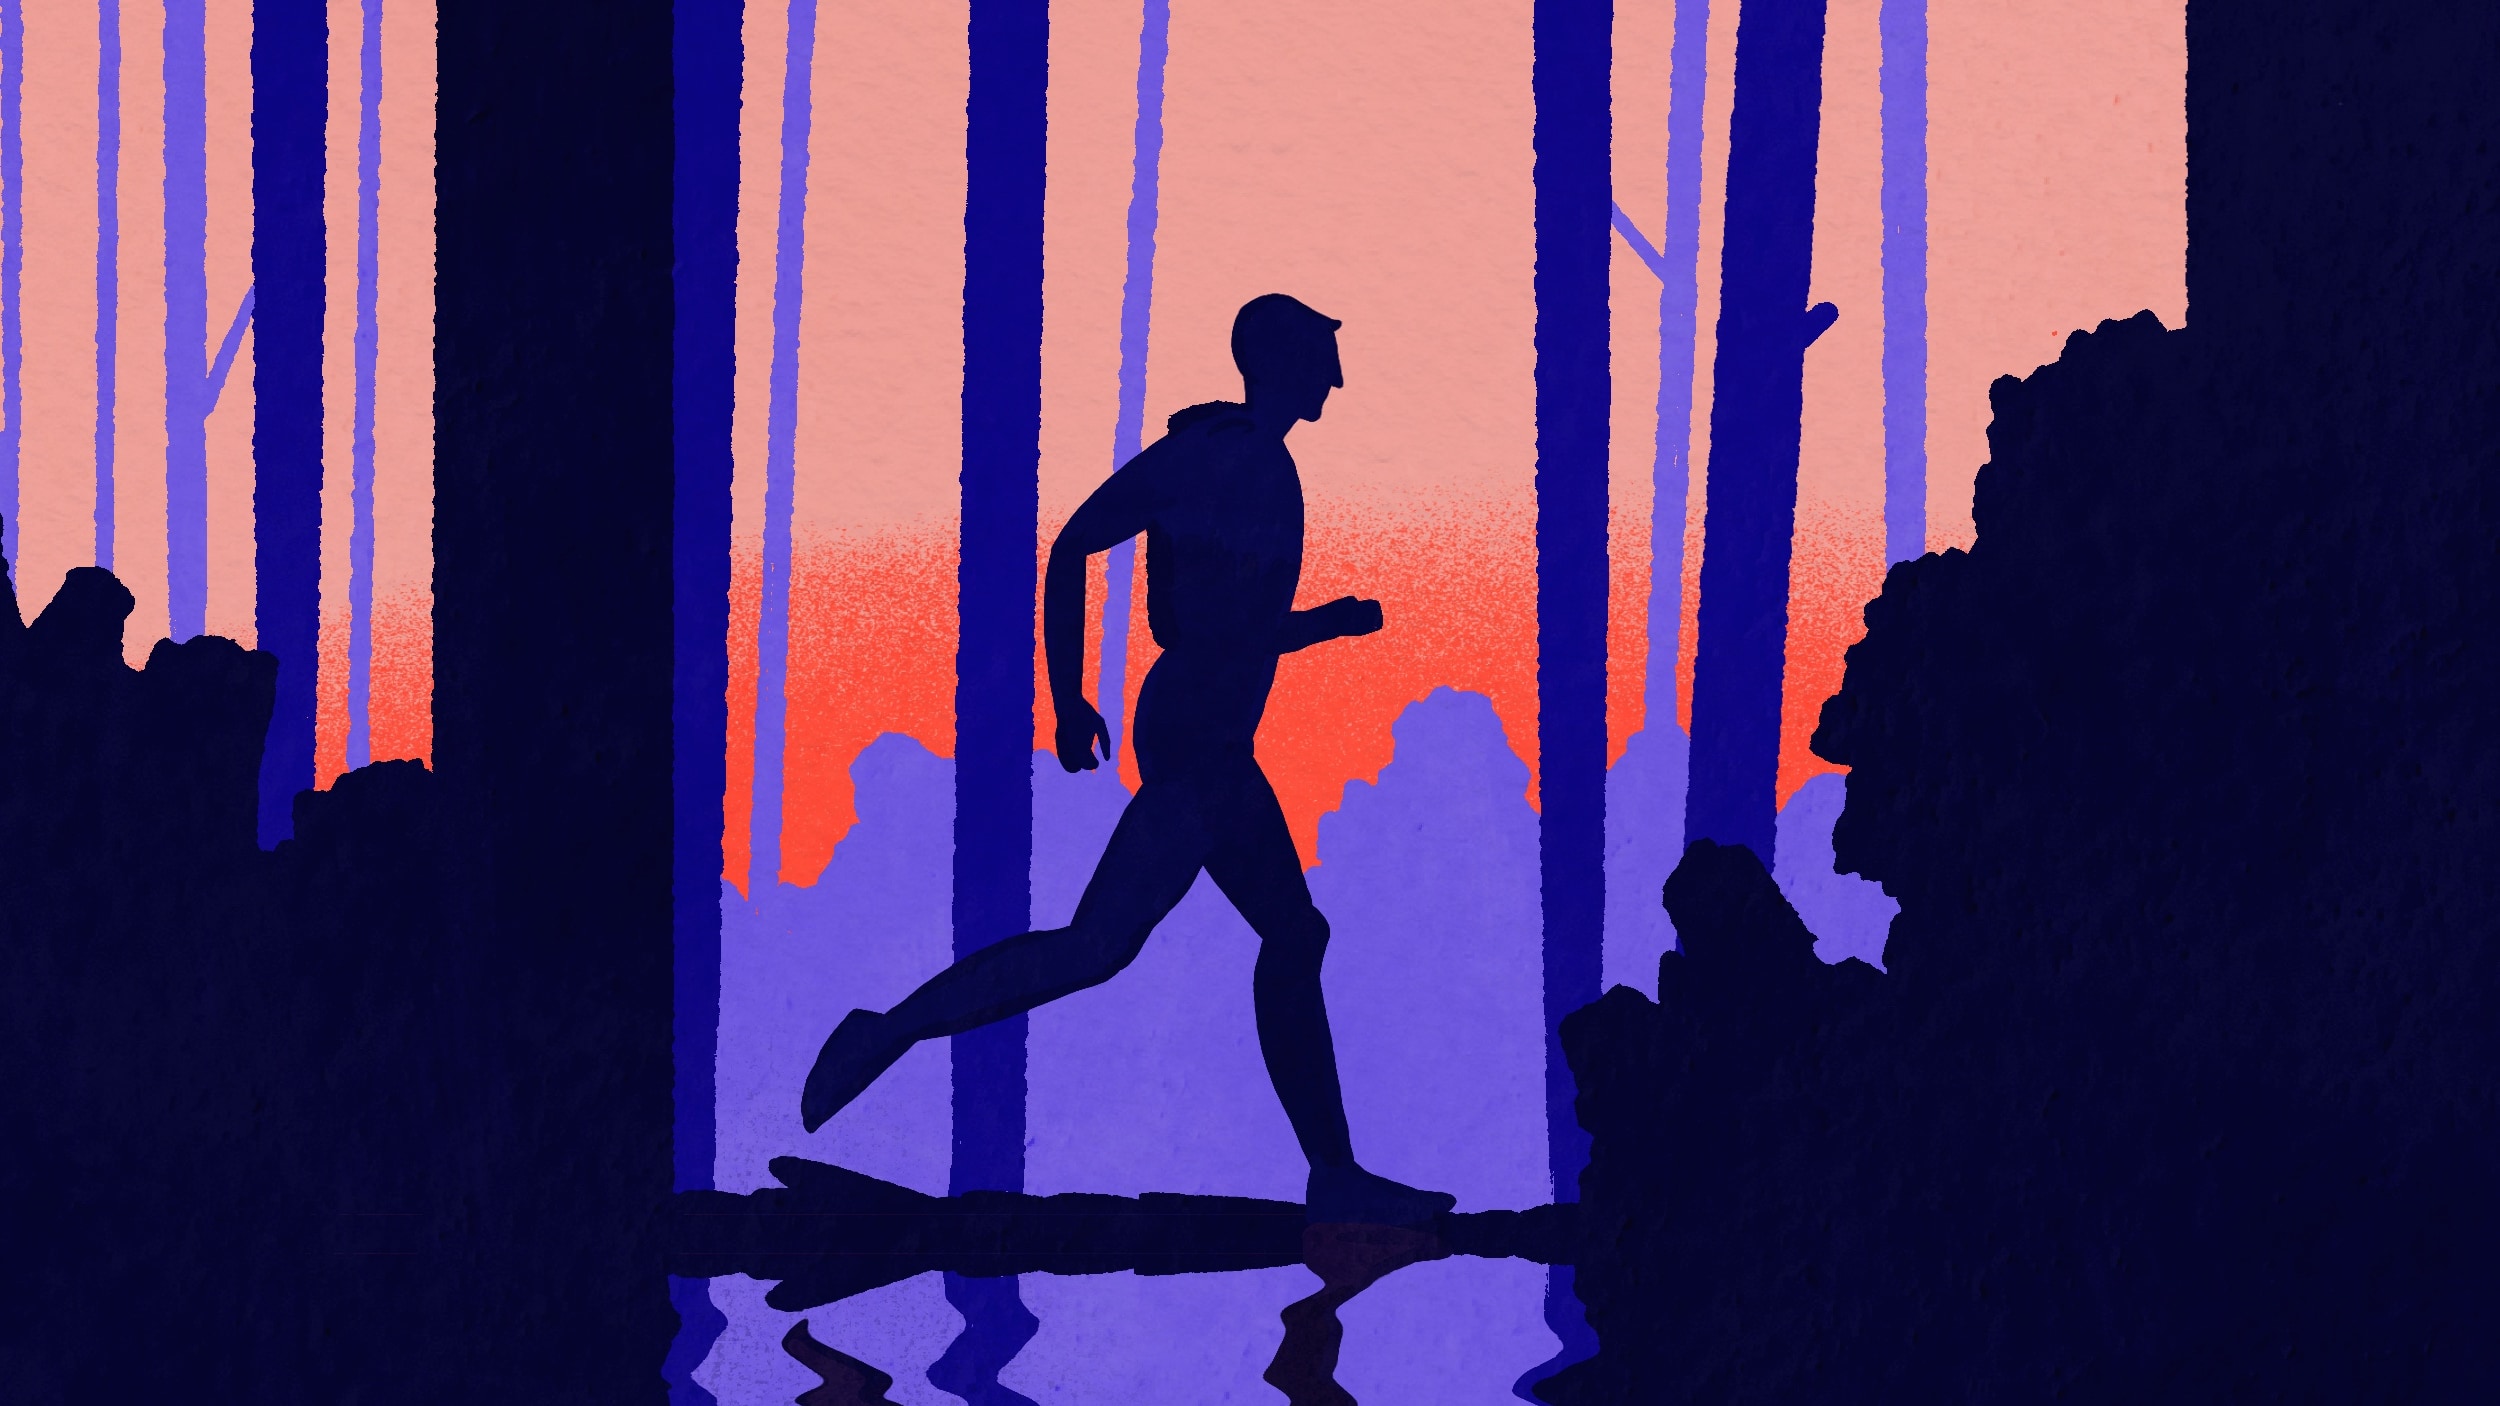 Homme courant dans la forêt au bord d'un lac. Manon Combe pour Les Maux Bleus, un podcast sur la santé mentale.